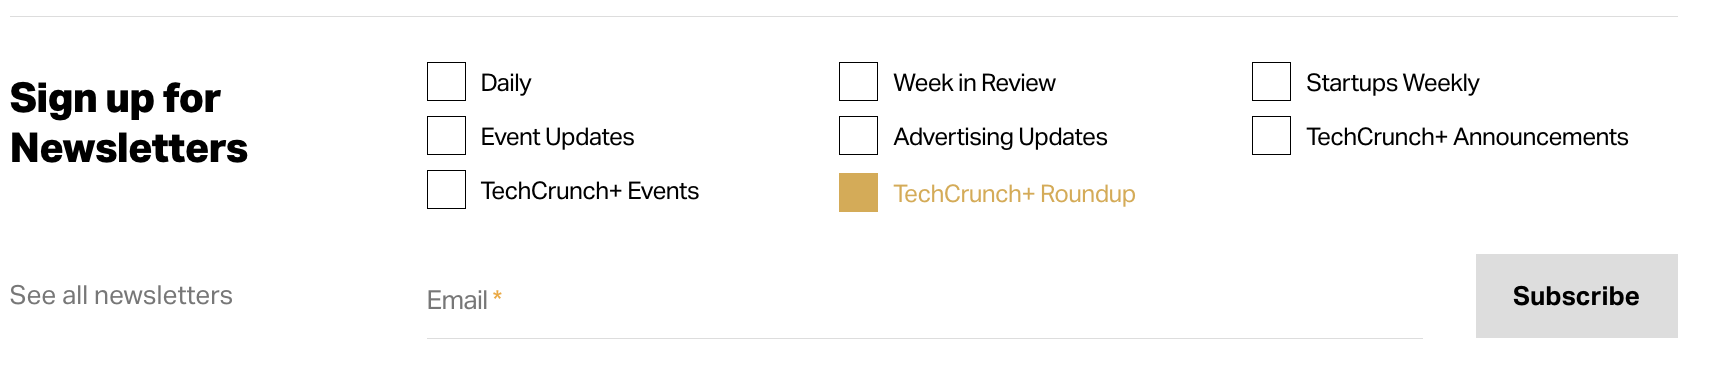 قم بالتسجيل في النشرة الإخبارية لـ TechCrunch+